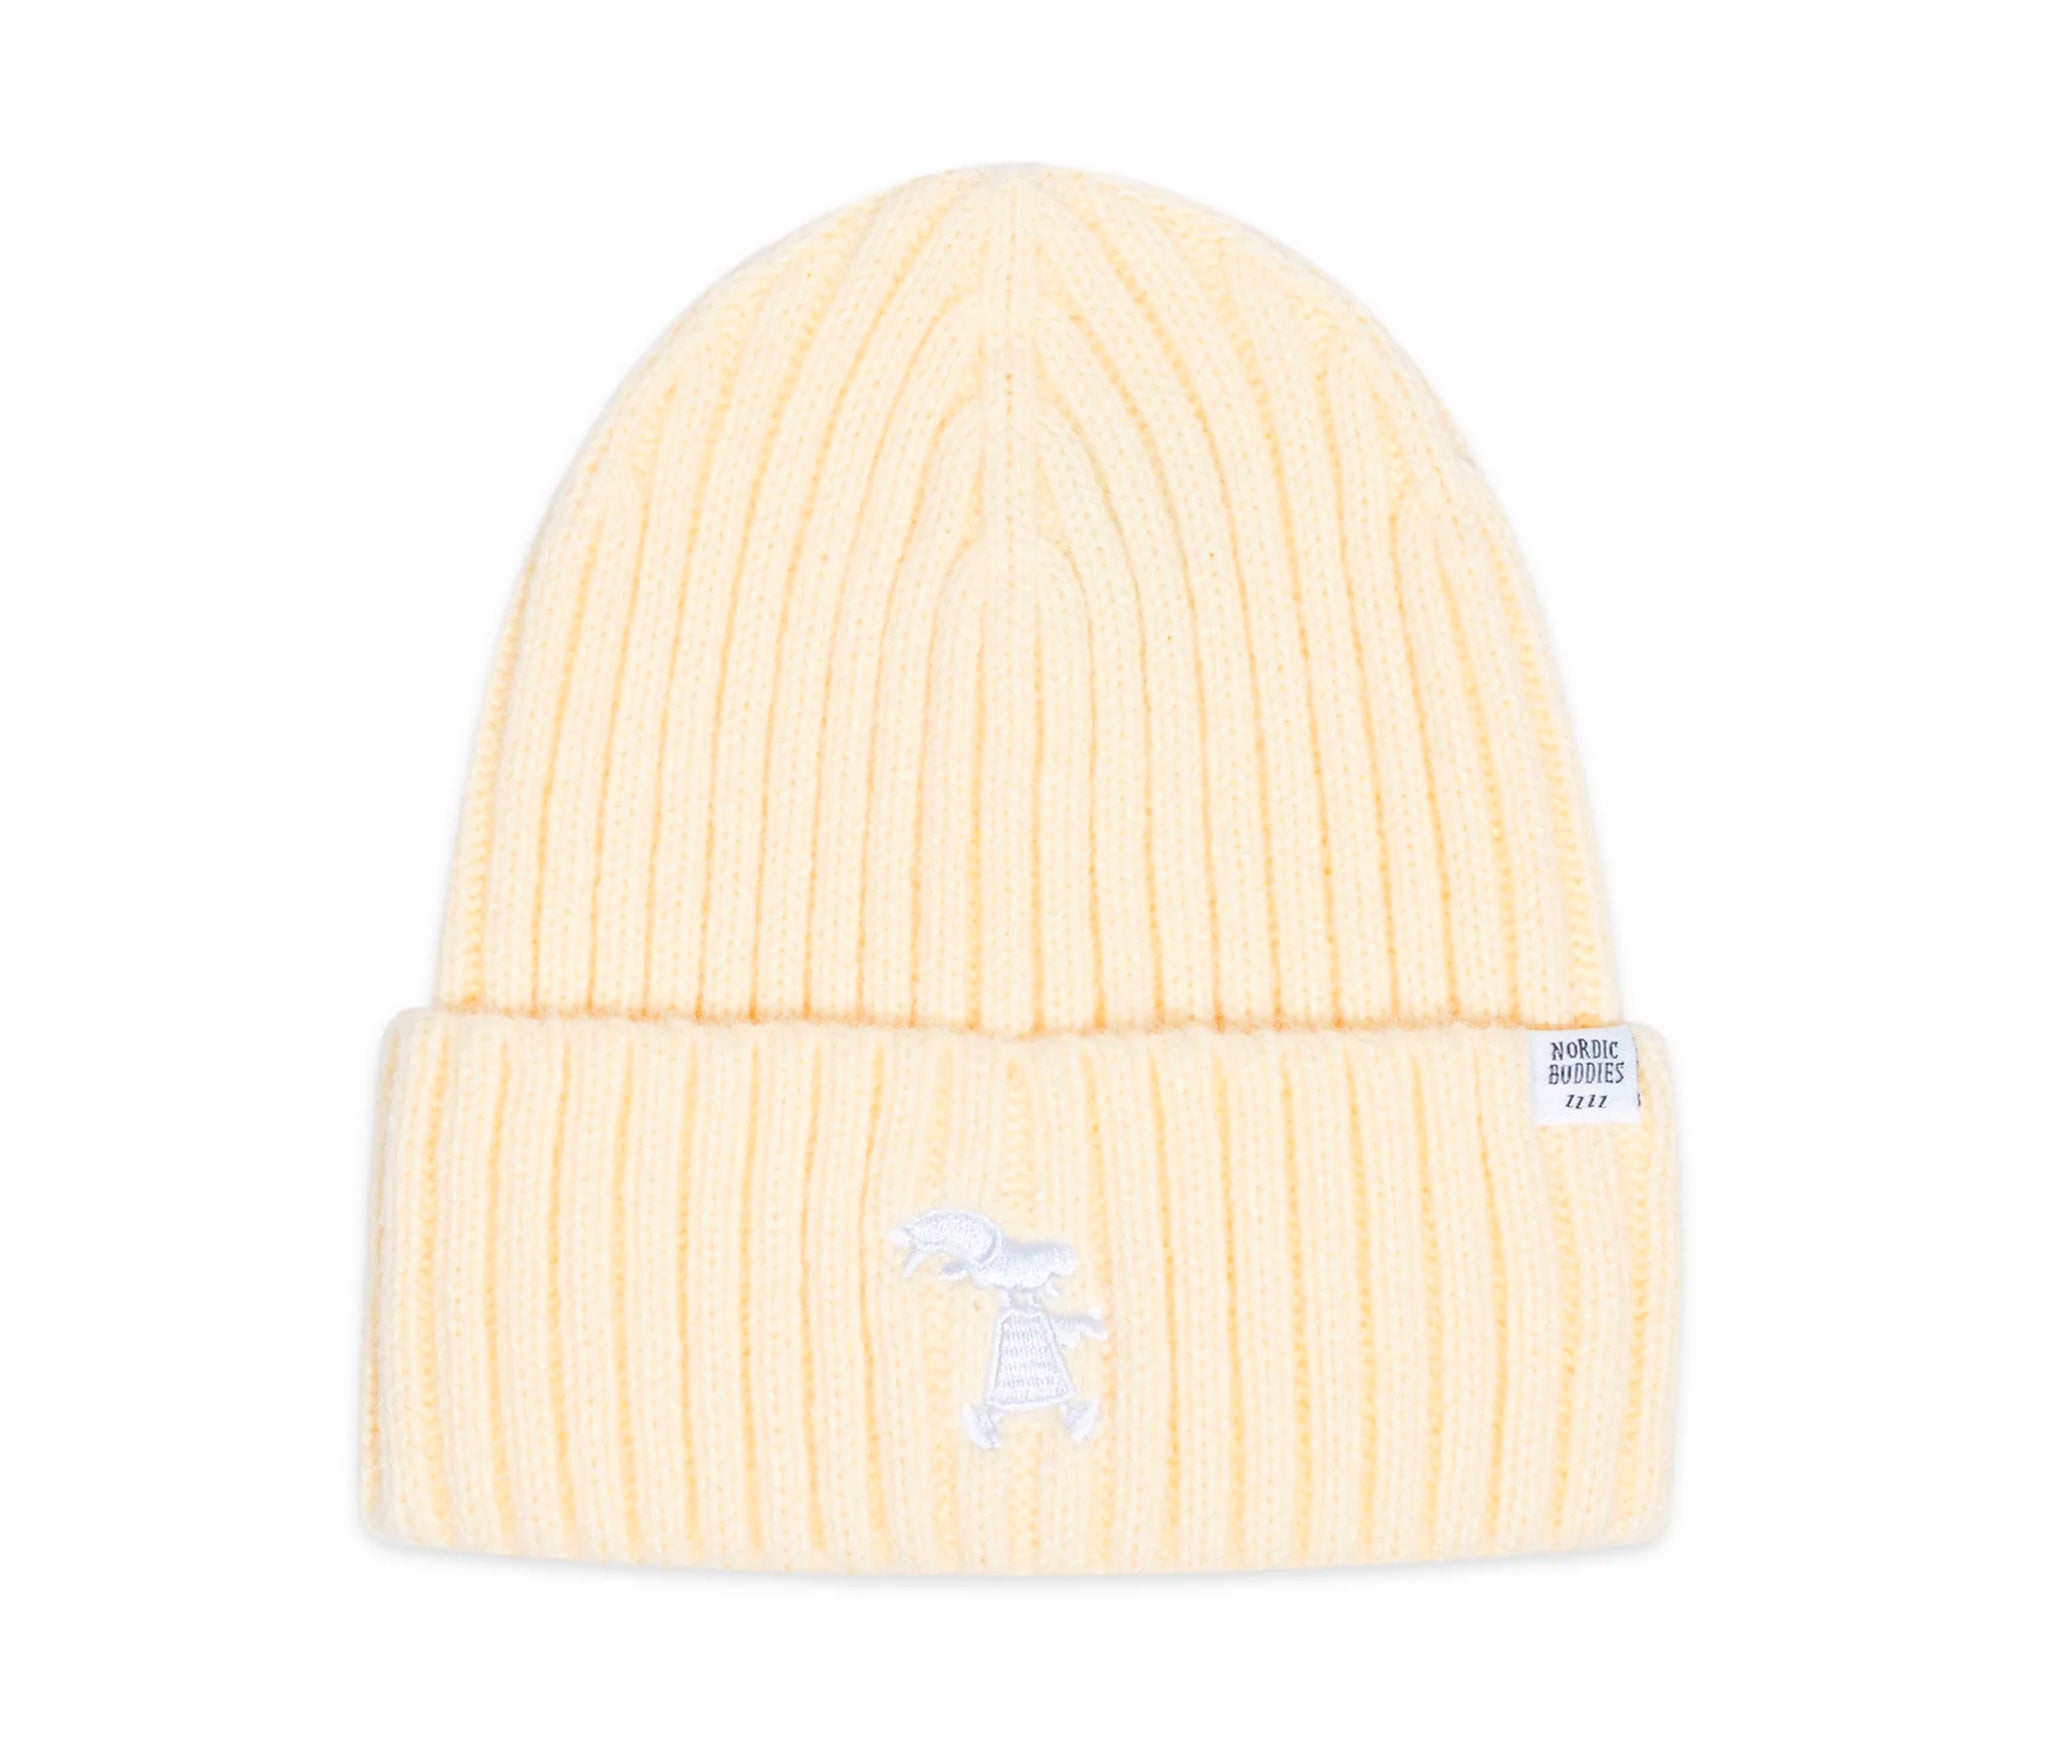 Mr. Clutterbuck Winter Hat Beanie Adult - Light Yellow